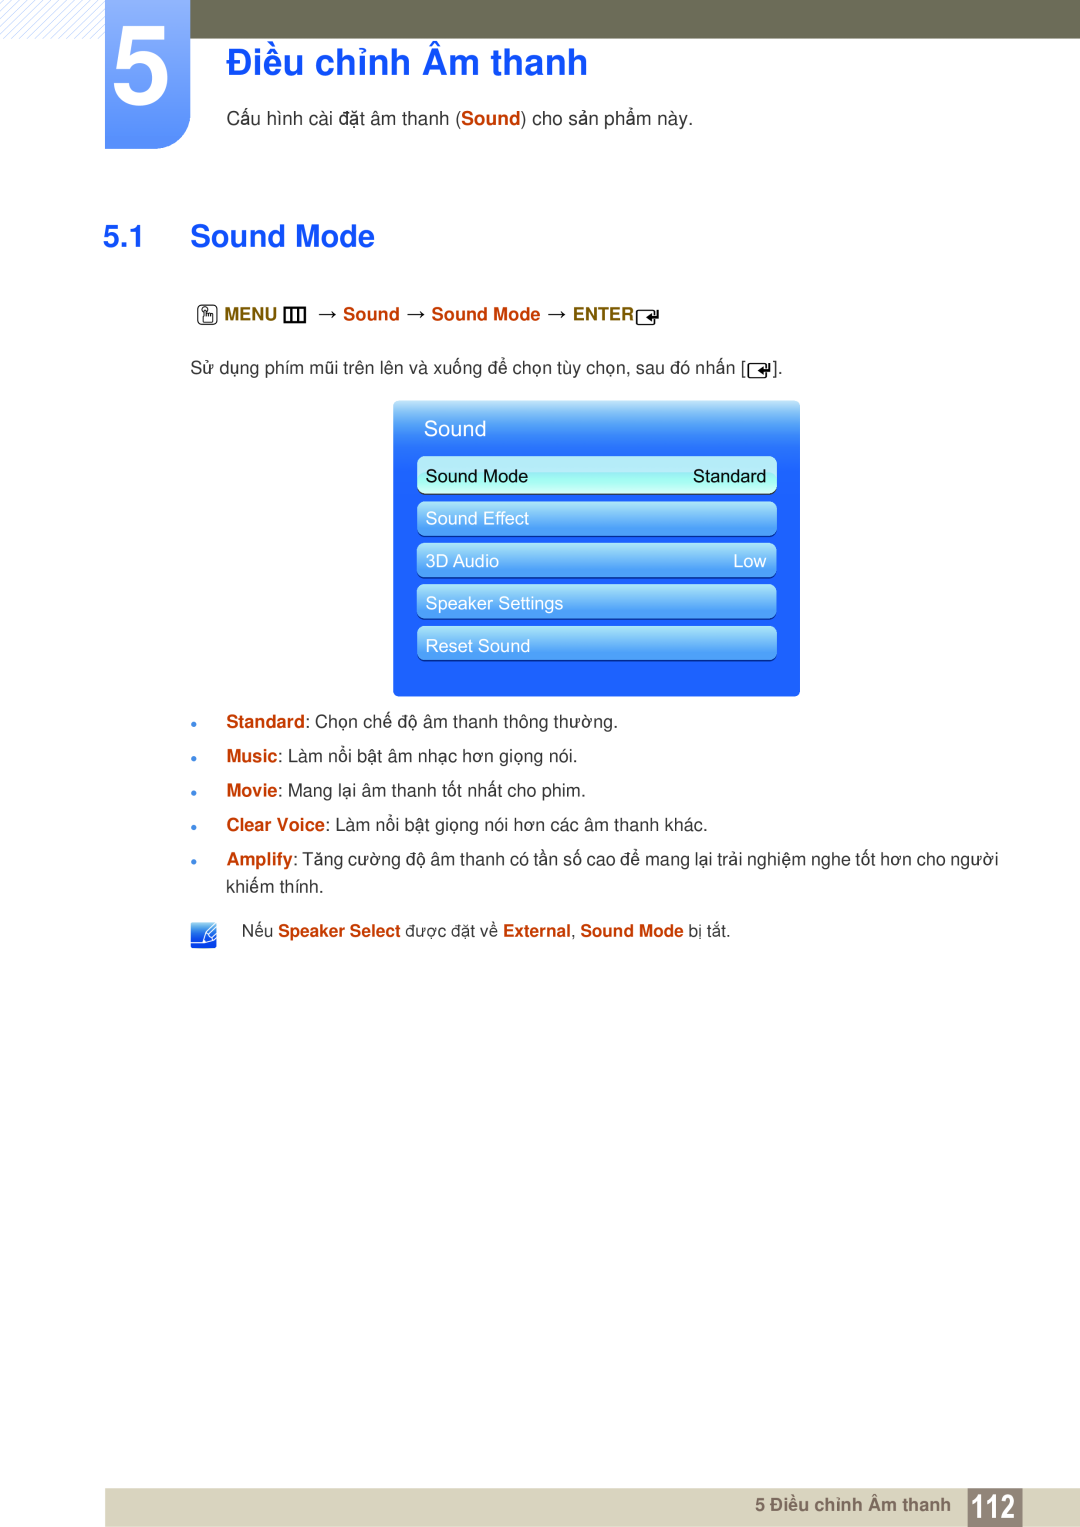 Samsung LH55UEAPLGC/XY manual 5 Điều chỉnh Âm thanh, Sound Mode, Cấu hình cài đặt âm thanh Sound cho sản phẩm này, Standard 